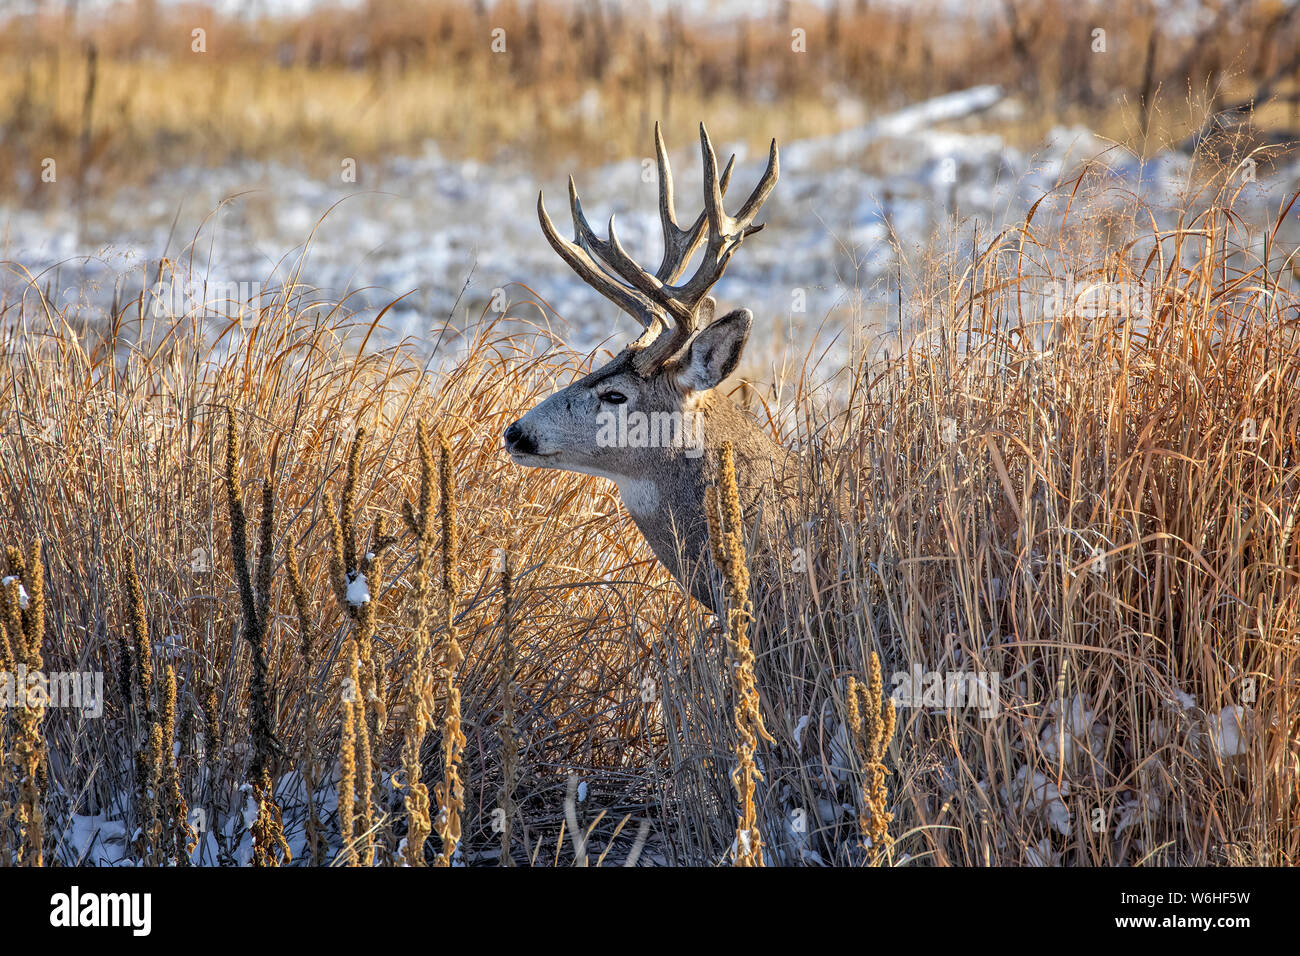 Buck le cerf mulet (Odocoileus hemionus) debout dans un champ d'herbe avec des traces de neige et à la gauche ; Denver, Colorado, États-Unis d'Amérique Banque D'Images